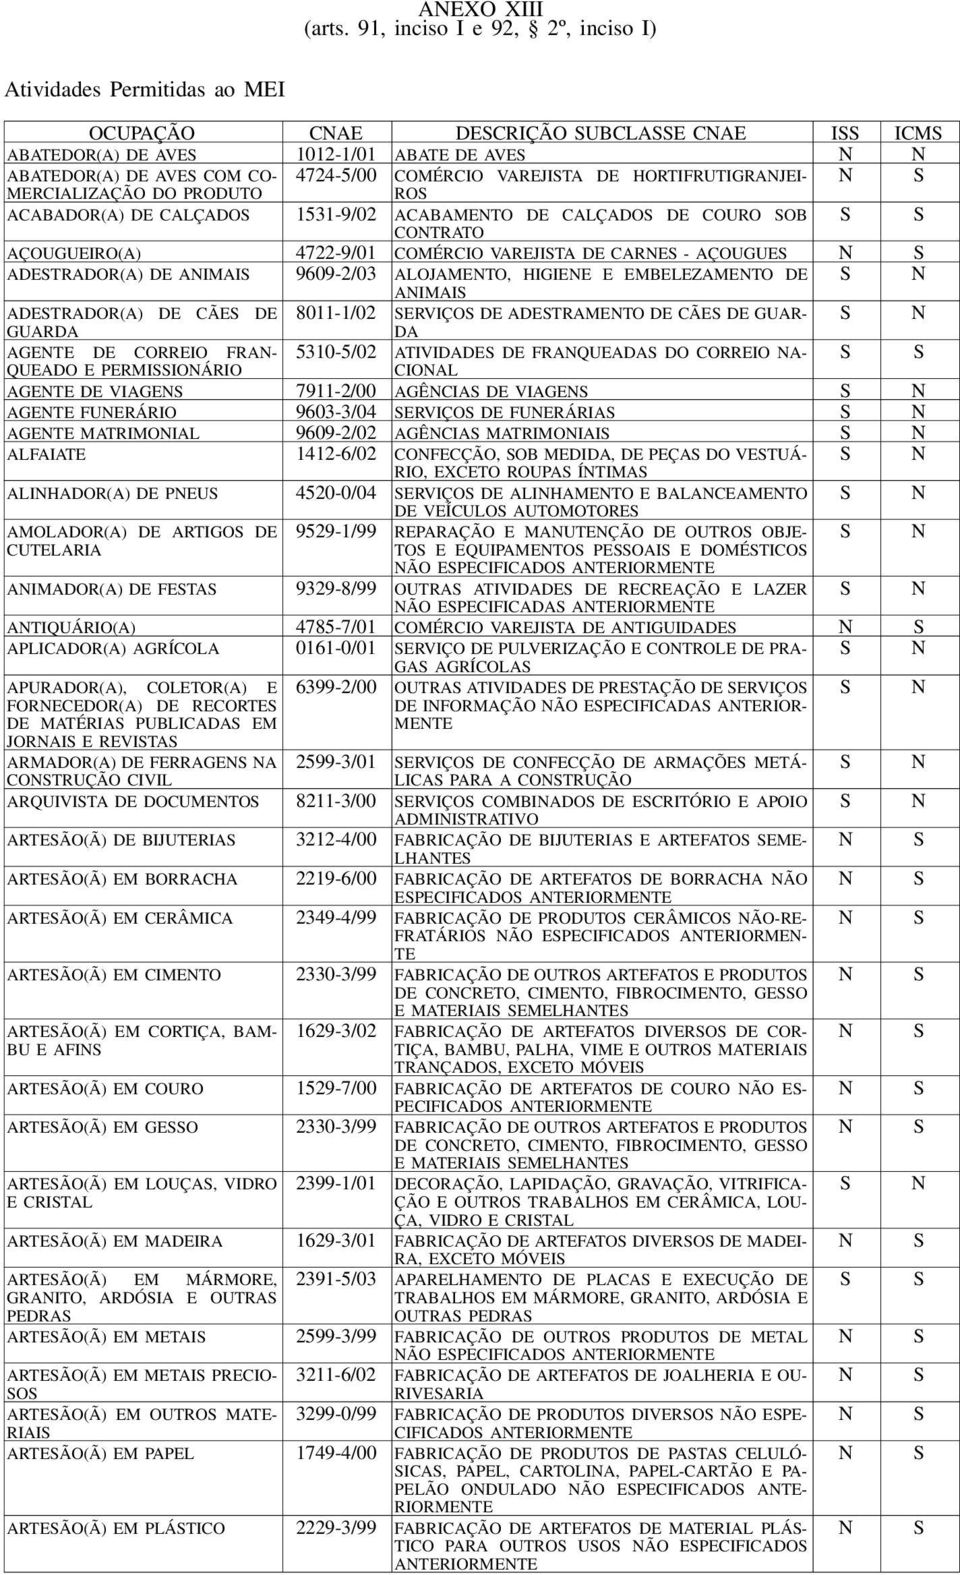 HORTIFRUTIGRAJEI- MERCIALIZA DO PDUTO ACABADOR(A) DE CALÇADO 1531-9/02 ACABAMETO DE CALÇADO DE COU OB C O T R ATO AÇOUGUEI(A) 4722-9/01 COMÉRCIO VAREJITA DE CARE - AÇOUGUE ADETRADOR(A) DE AIMAI